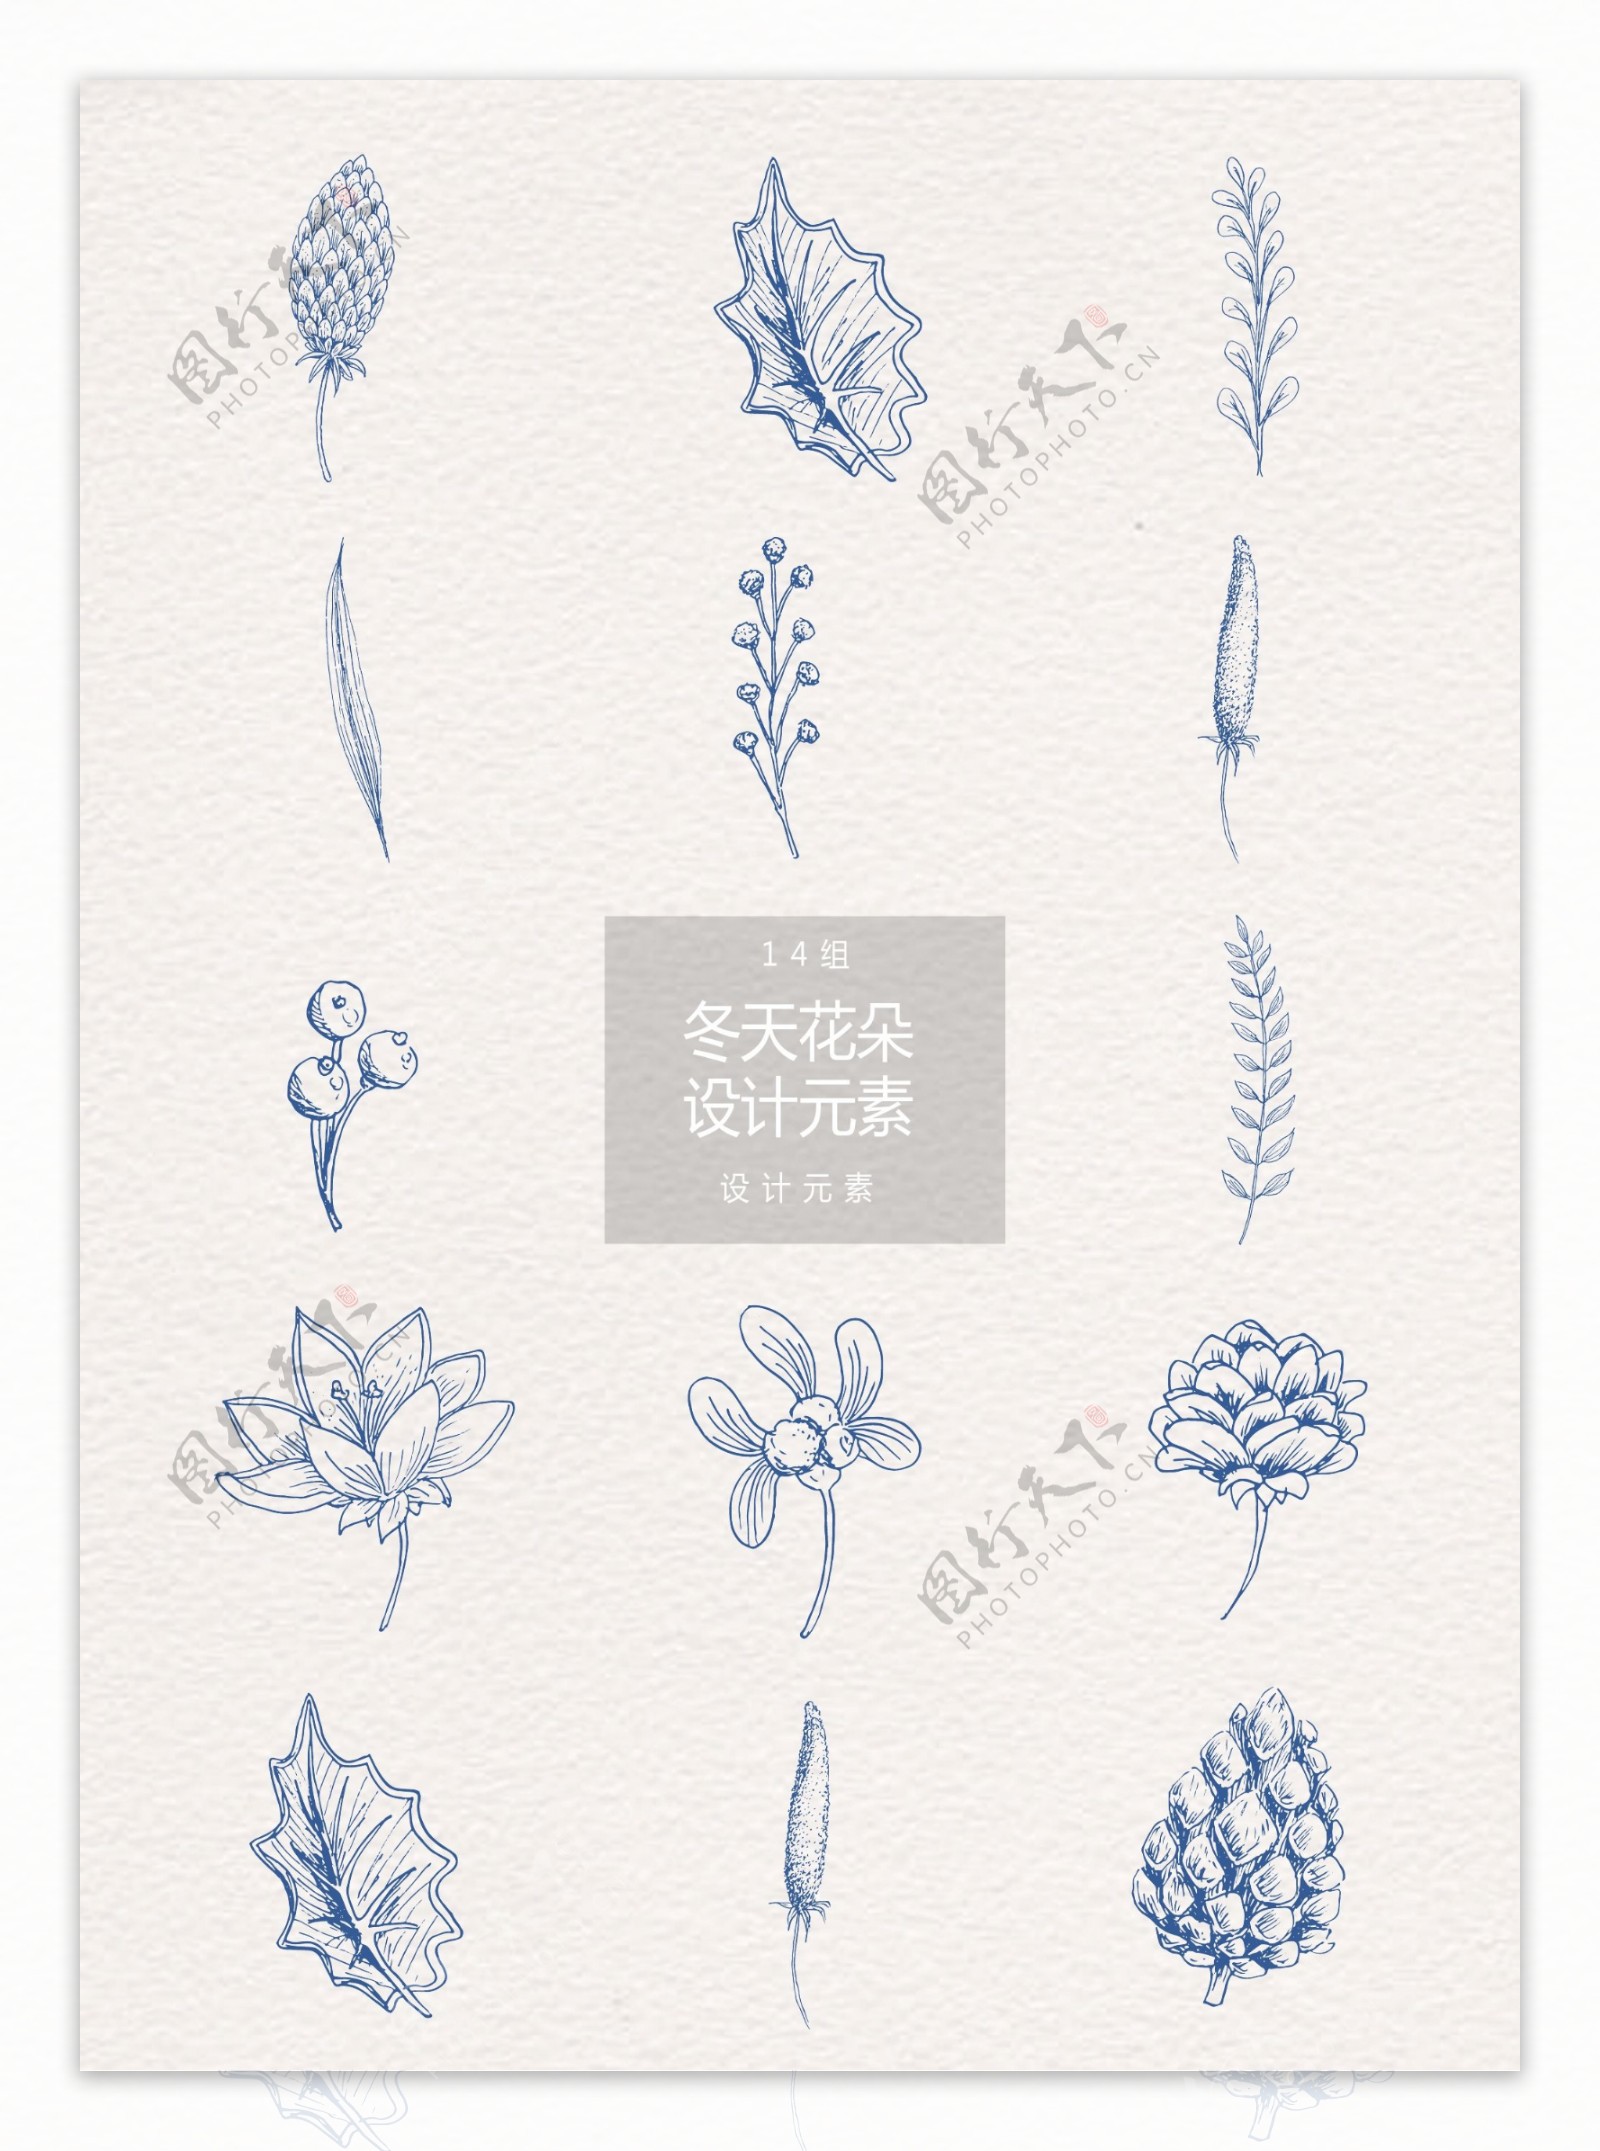 手绘冬季花卉植物设计元素